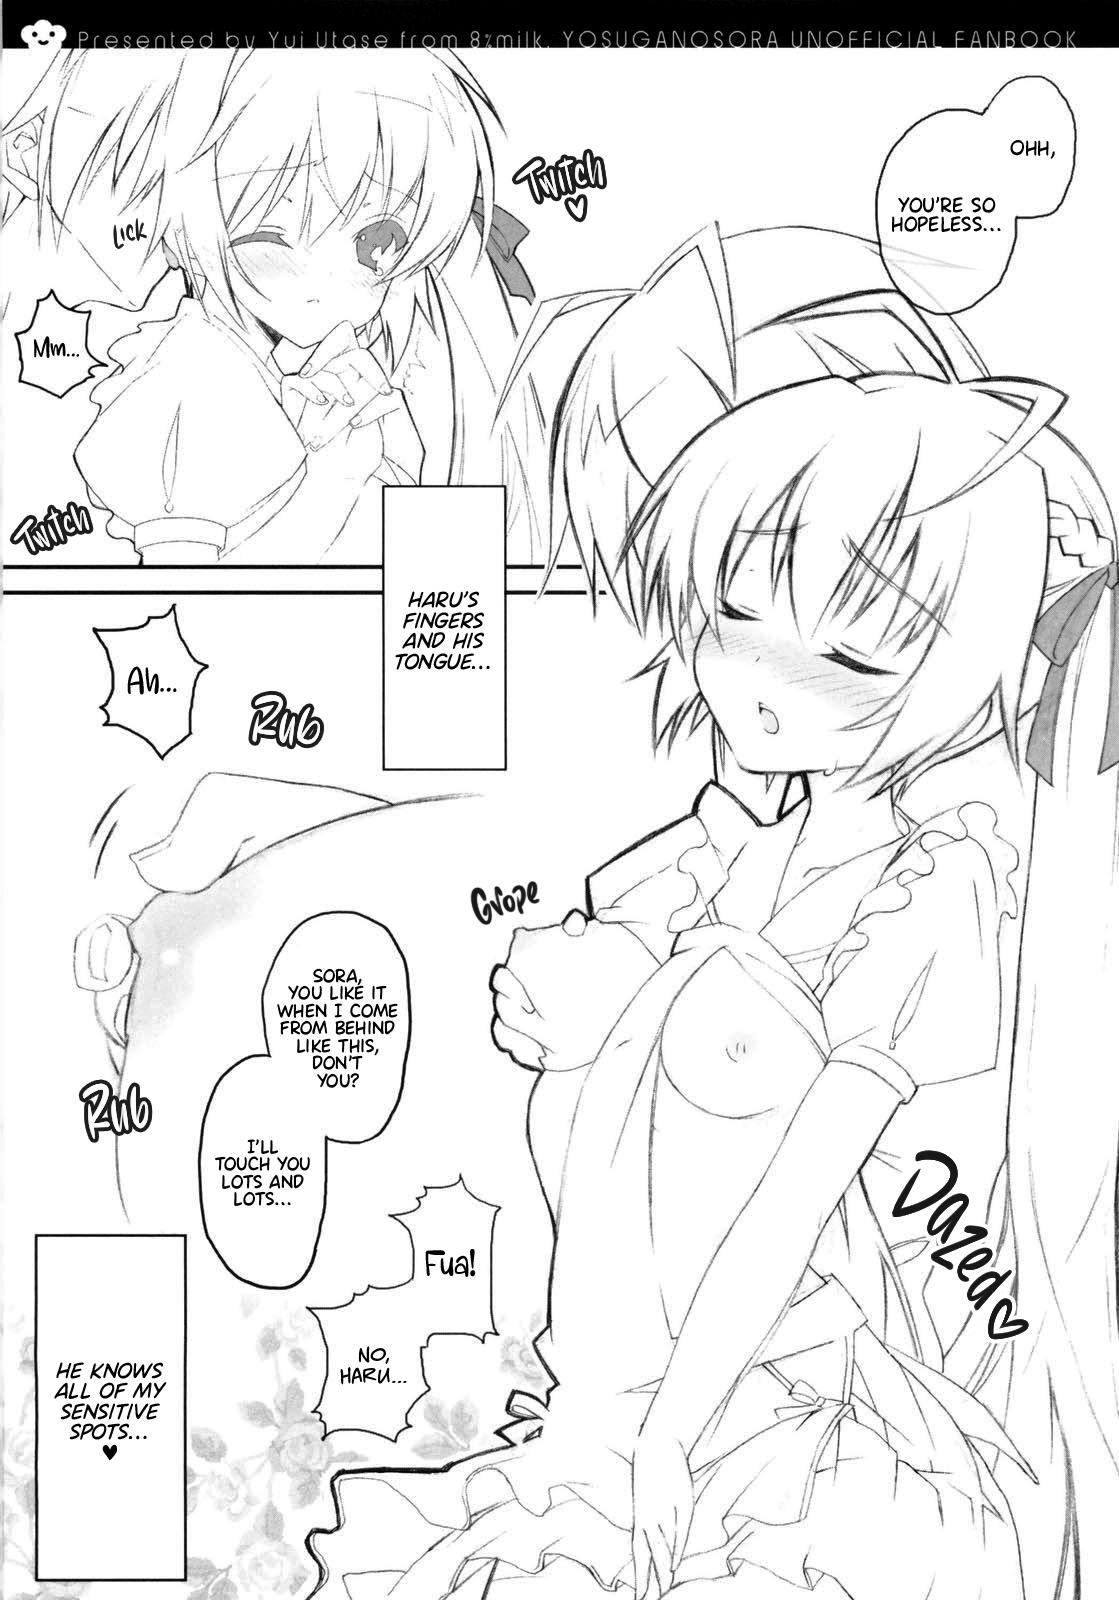 Public Sex Harumachi bloomin'! - Yosuga no sora 1080p - Page 6